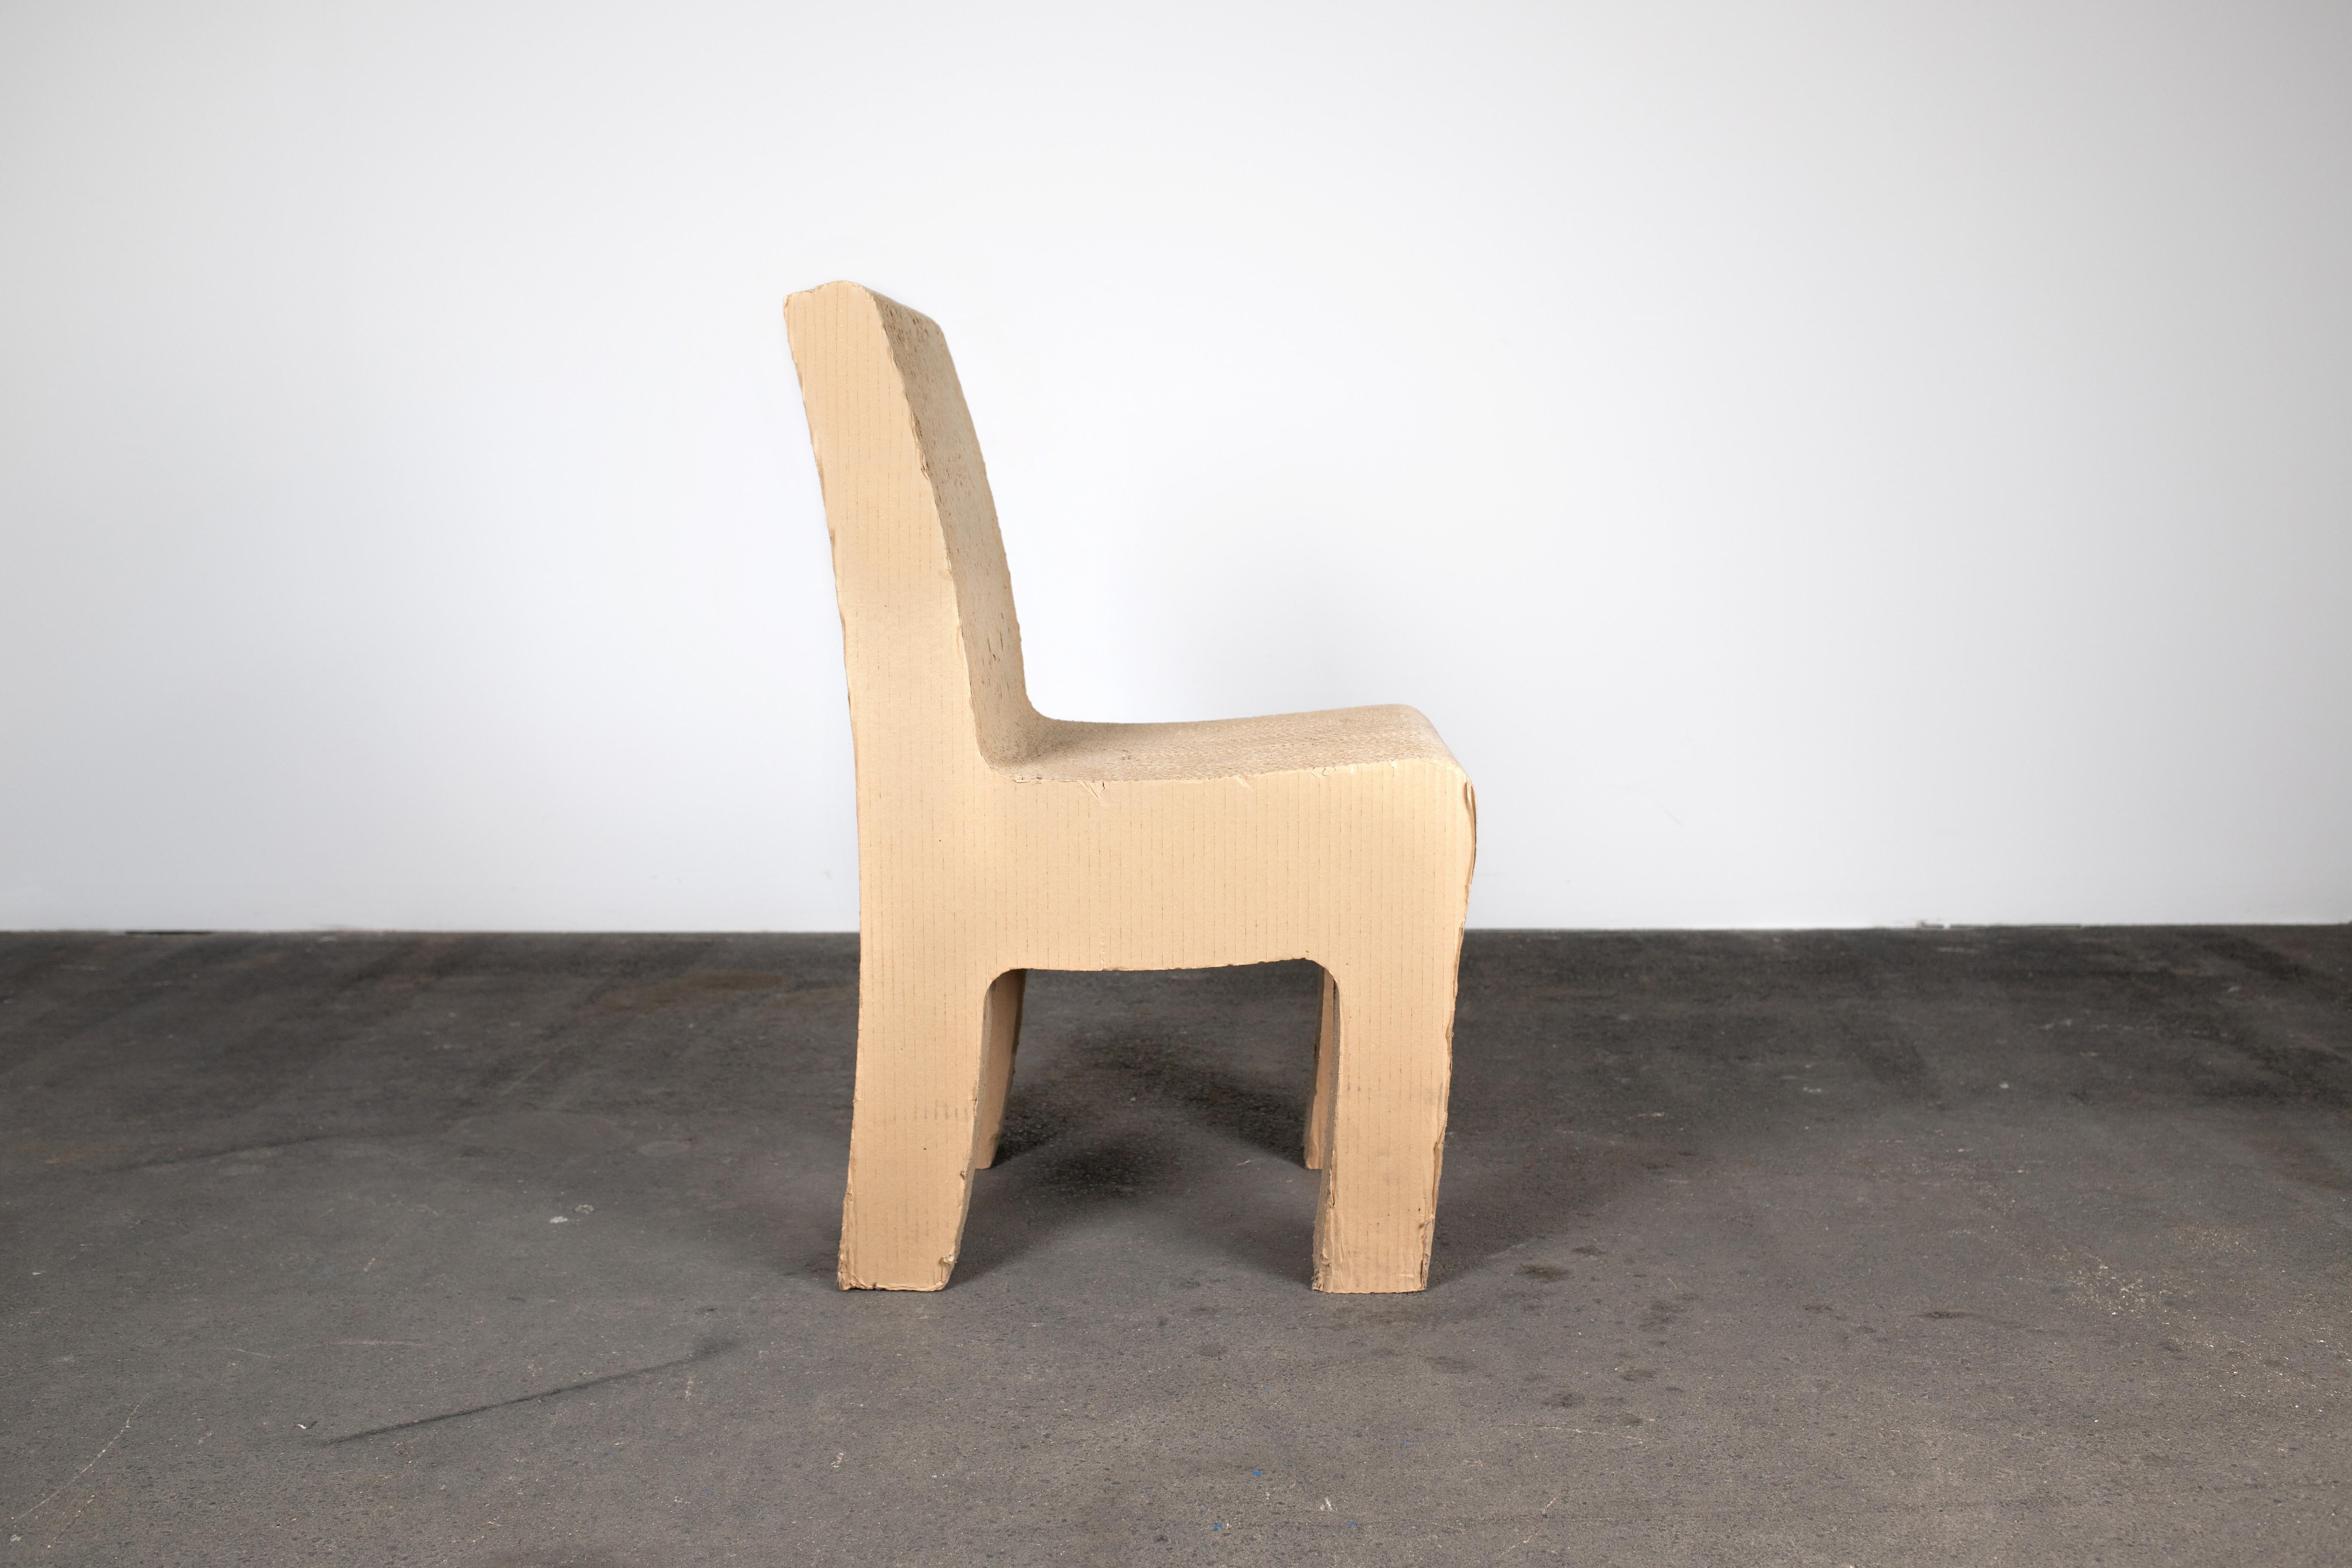 Chaise sculpturale postmoderne fantaisiste en carton des années 1980 en Allemagne, en carton marron et rappelant Frank Gehry. La chaise est étonnamment ergonomique et confortable. Il ajoute certainement une touche ludique et amusante à votre